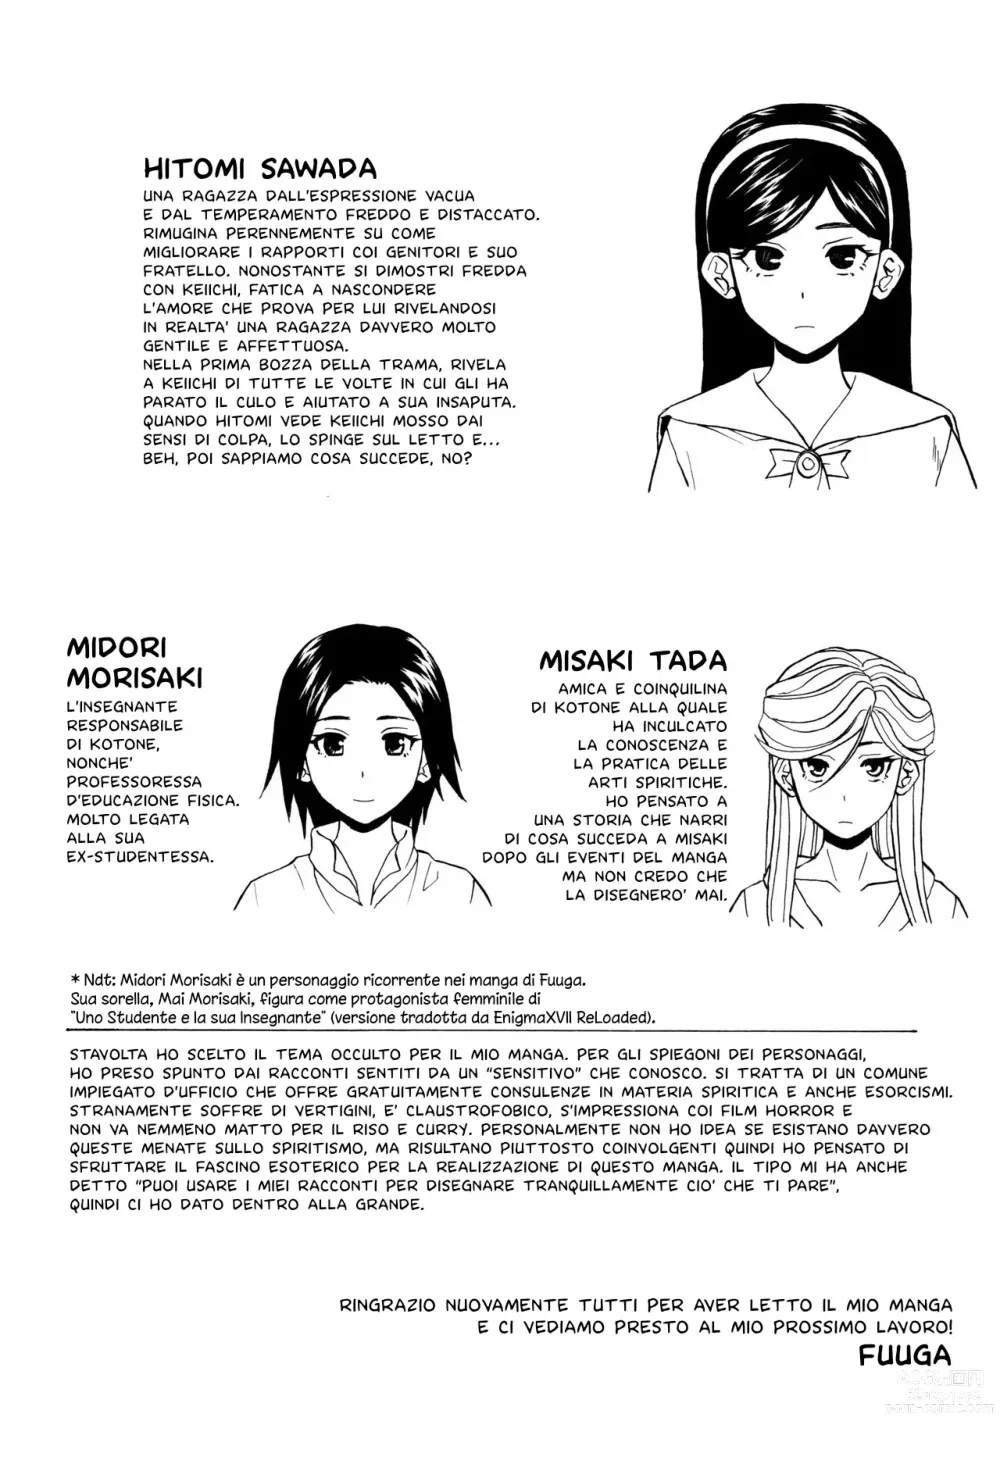 Page 210 of manga Segreti, Suicidi e Sorelle (decensored)